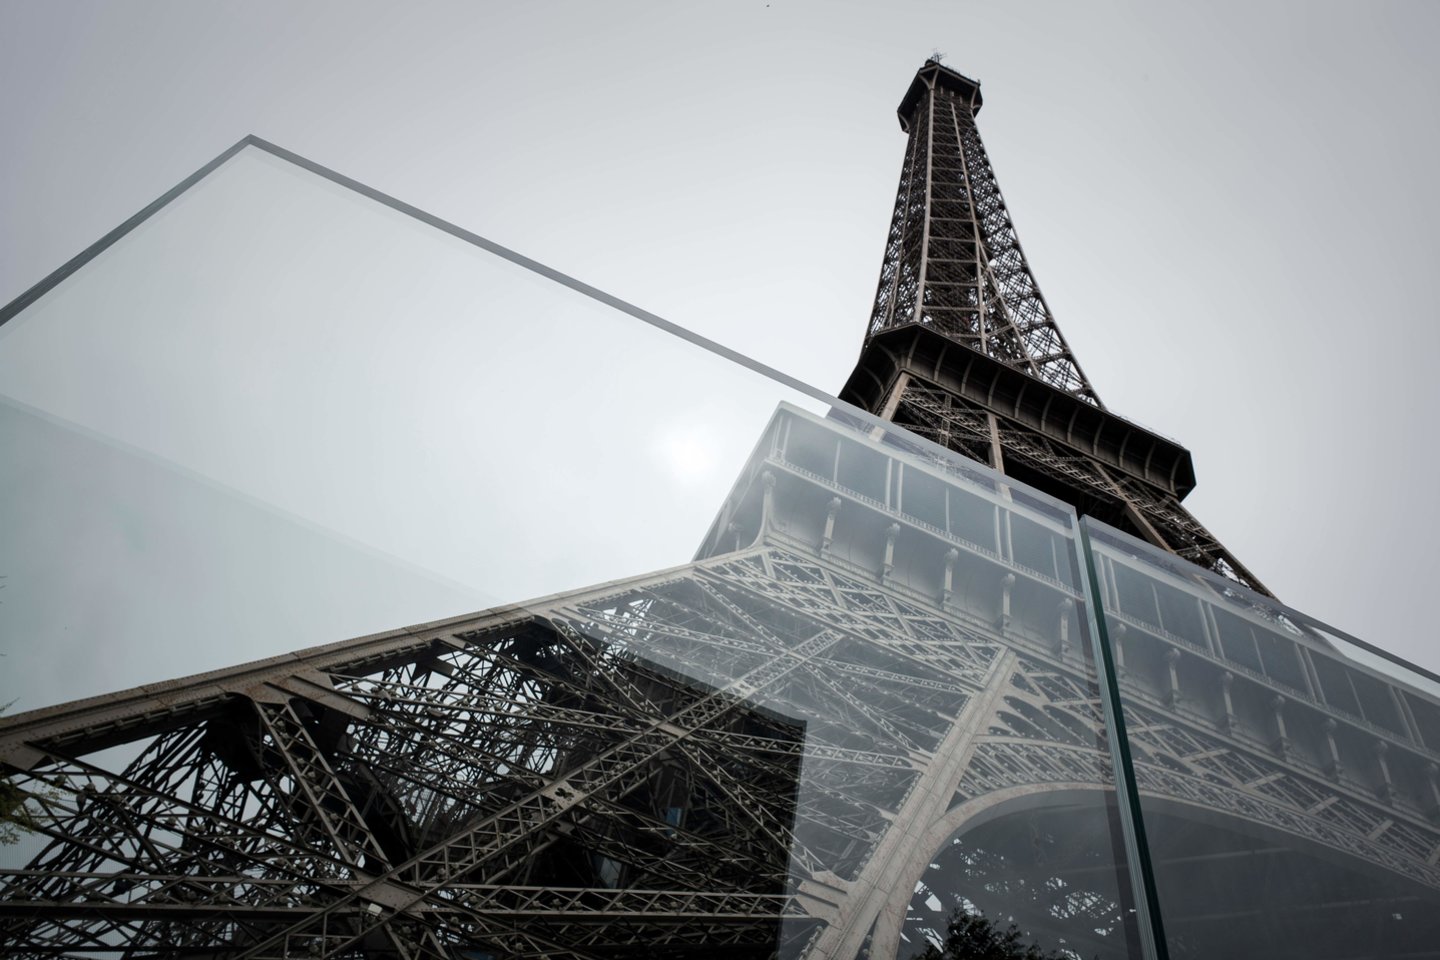 Anksčiau šią savaitę dėl darbuotojų streiko uždarytas Eiffelio bokštas penktadienį vėl priims lankytojus, ketvirtadienį pranešė vadovybė ir profesinės sąjungos.<br>AFP/Scanpix nuotr.